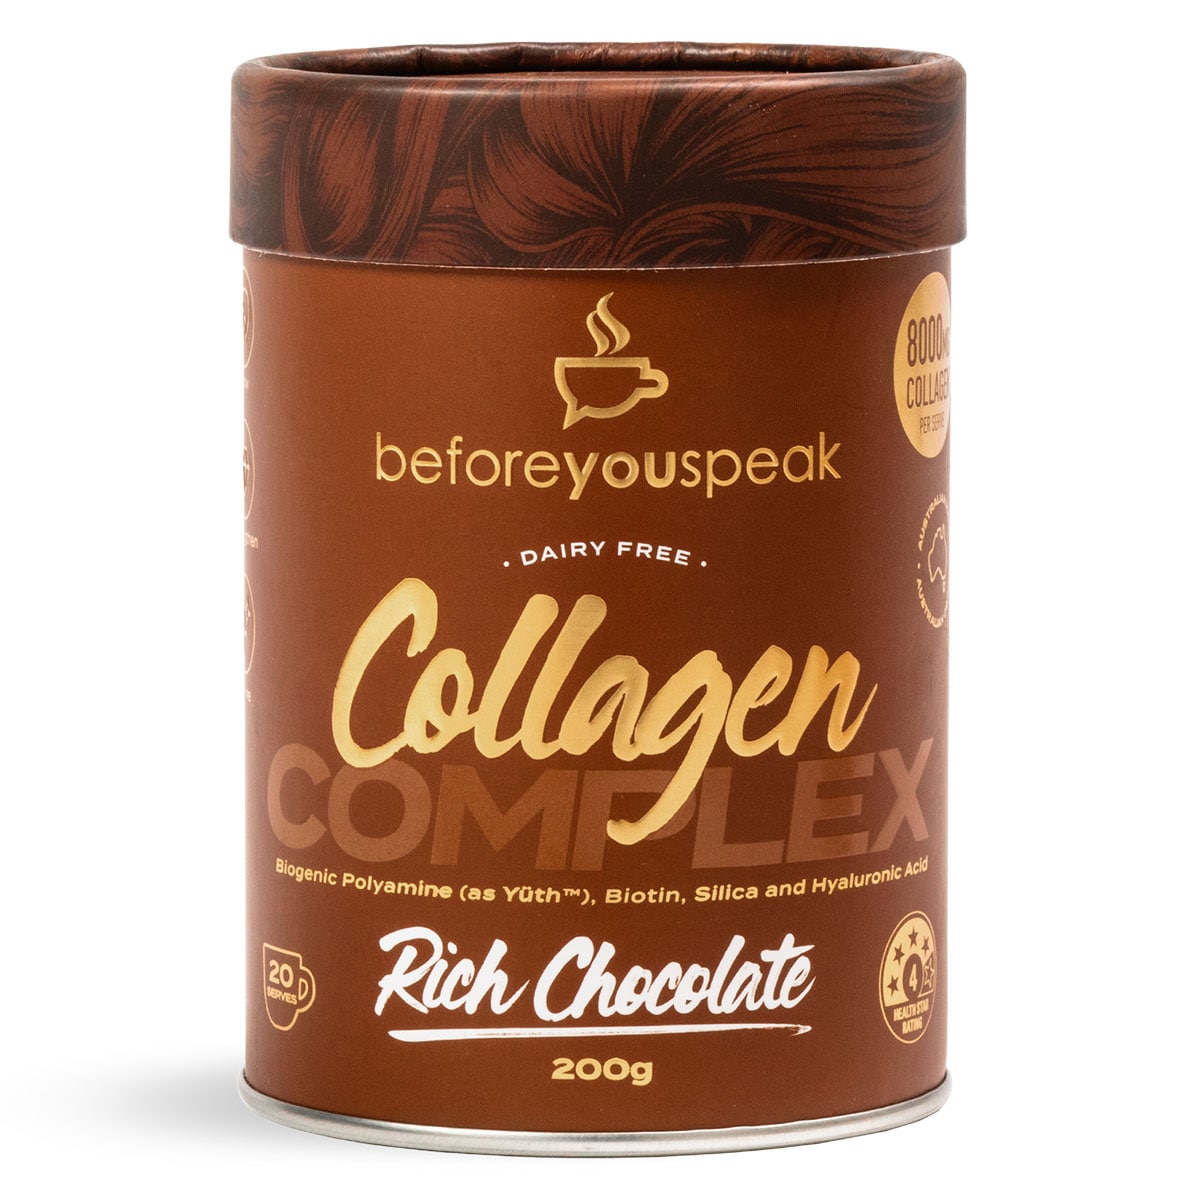 Beforeyouspeak Collagen Complex - Rich Chocolate 200g